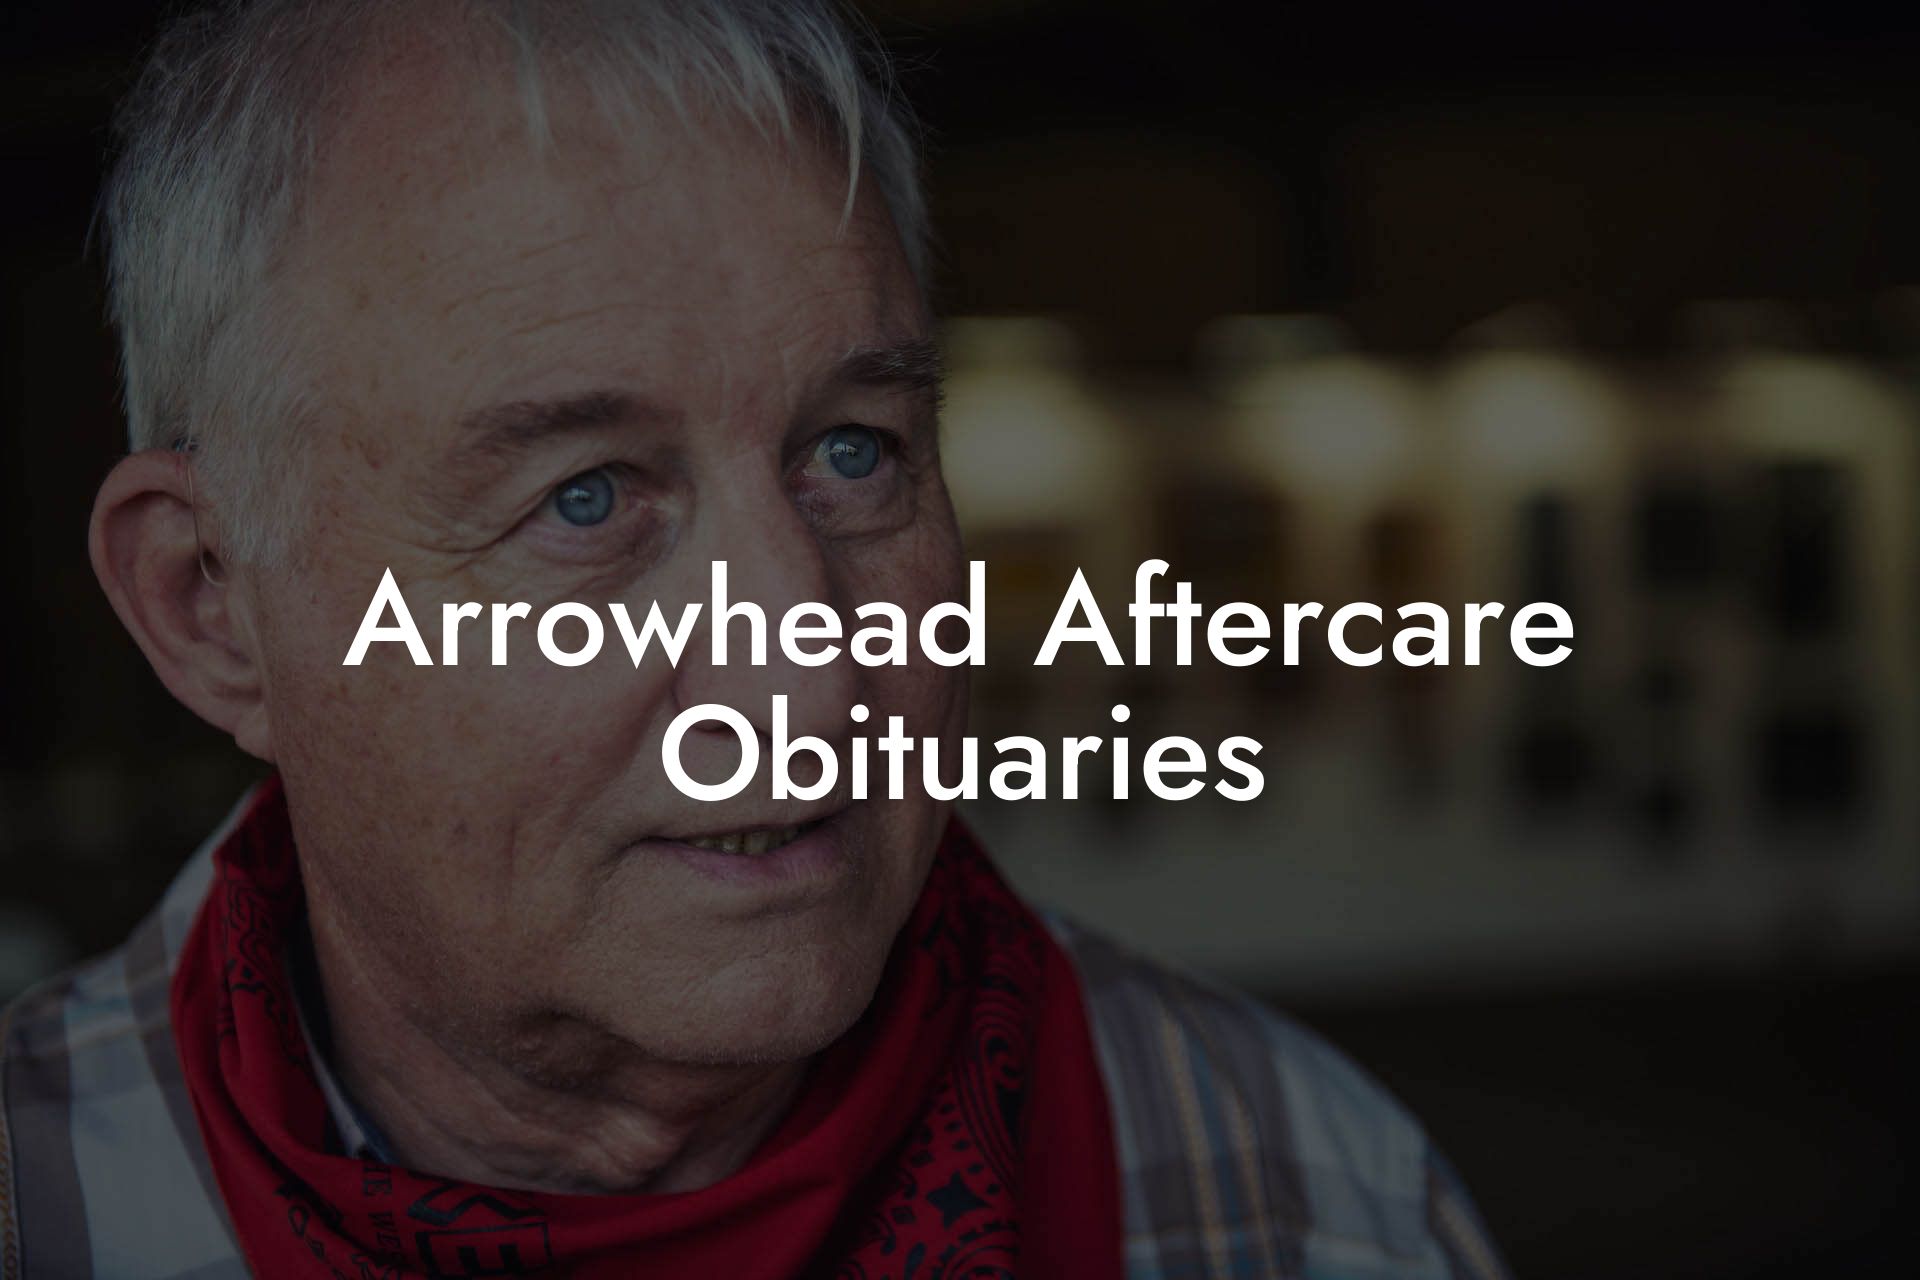 Arrowhead Aftercare Obituaries